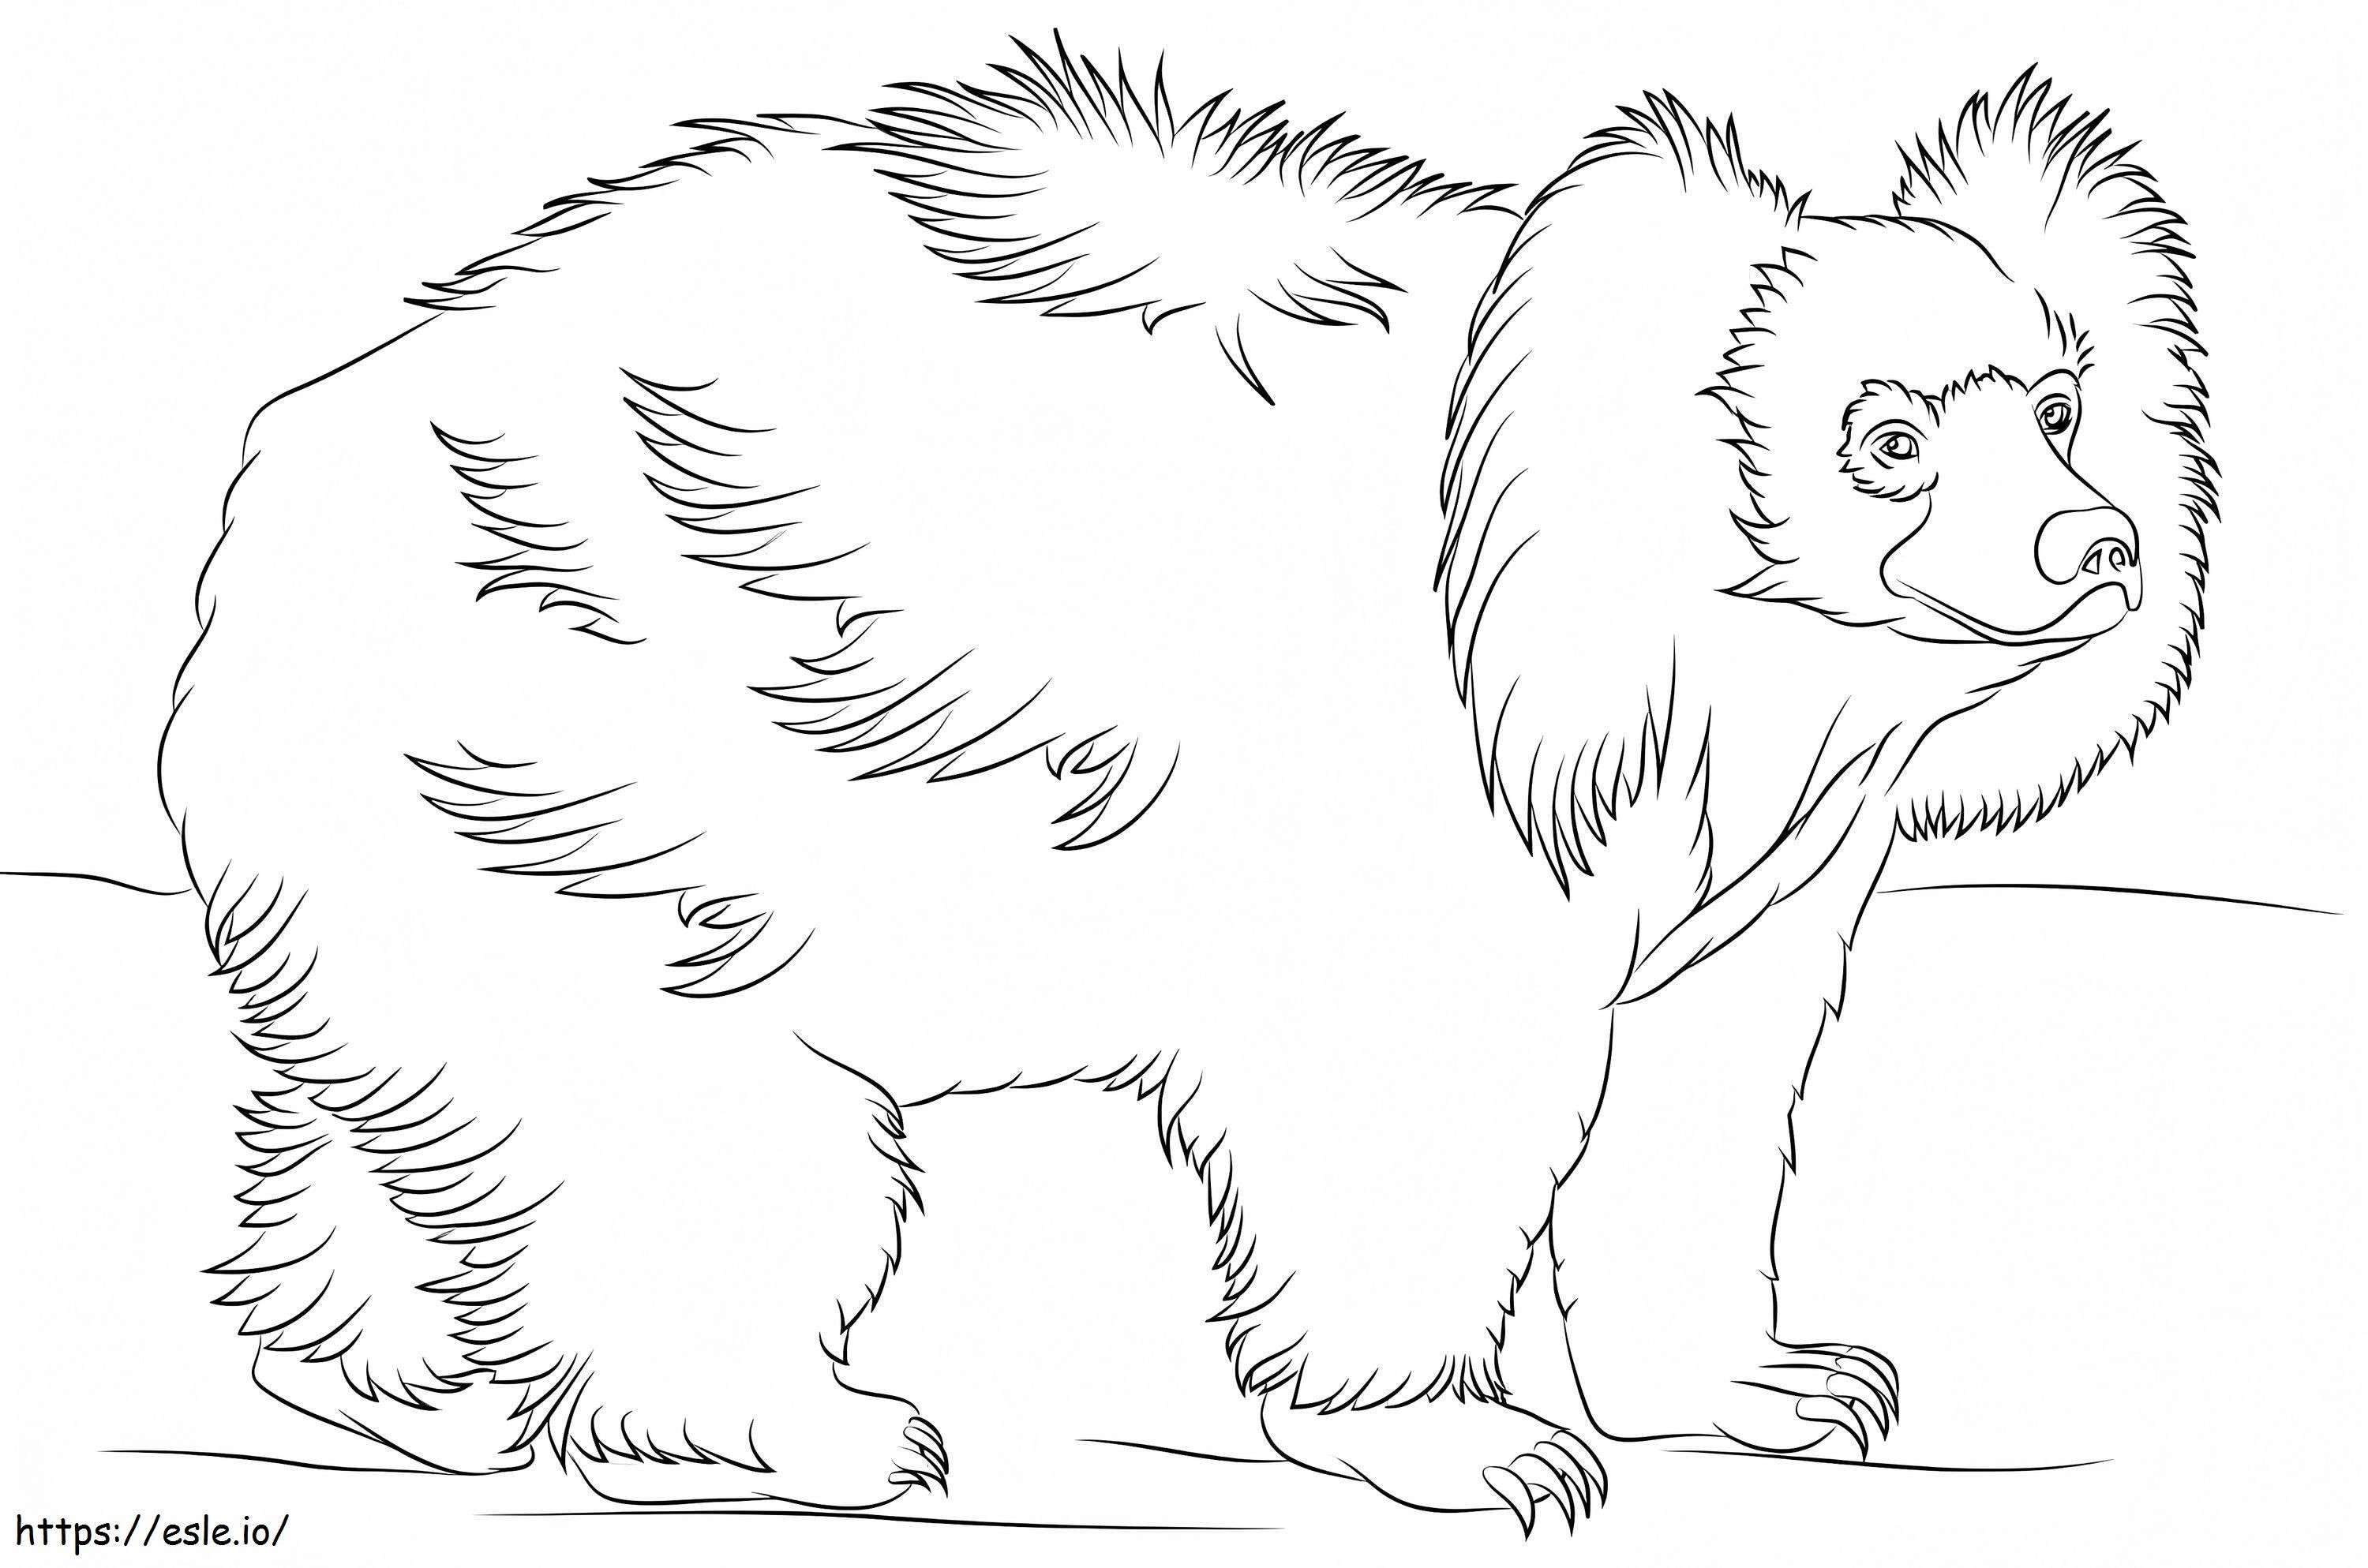 Podstawowy niedźwiedź leniwiec kolorowanka